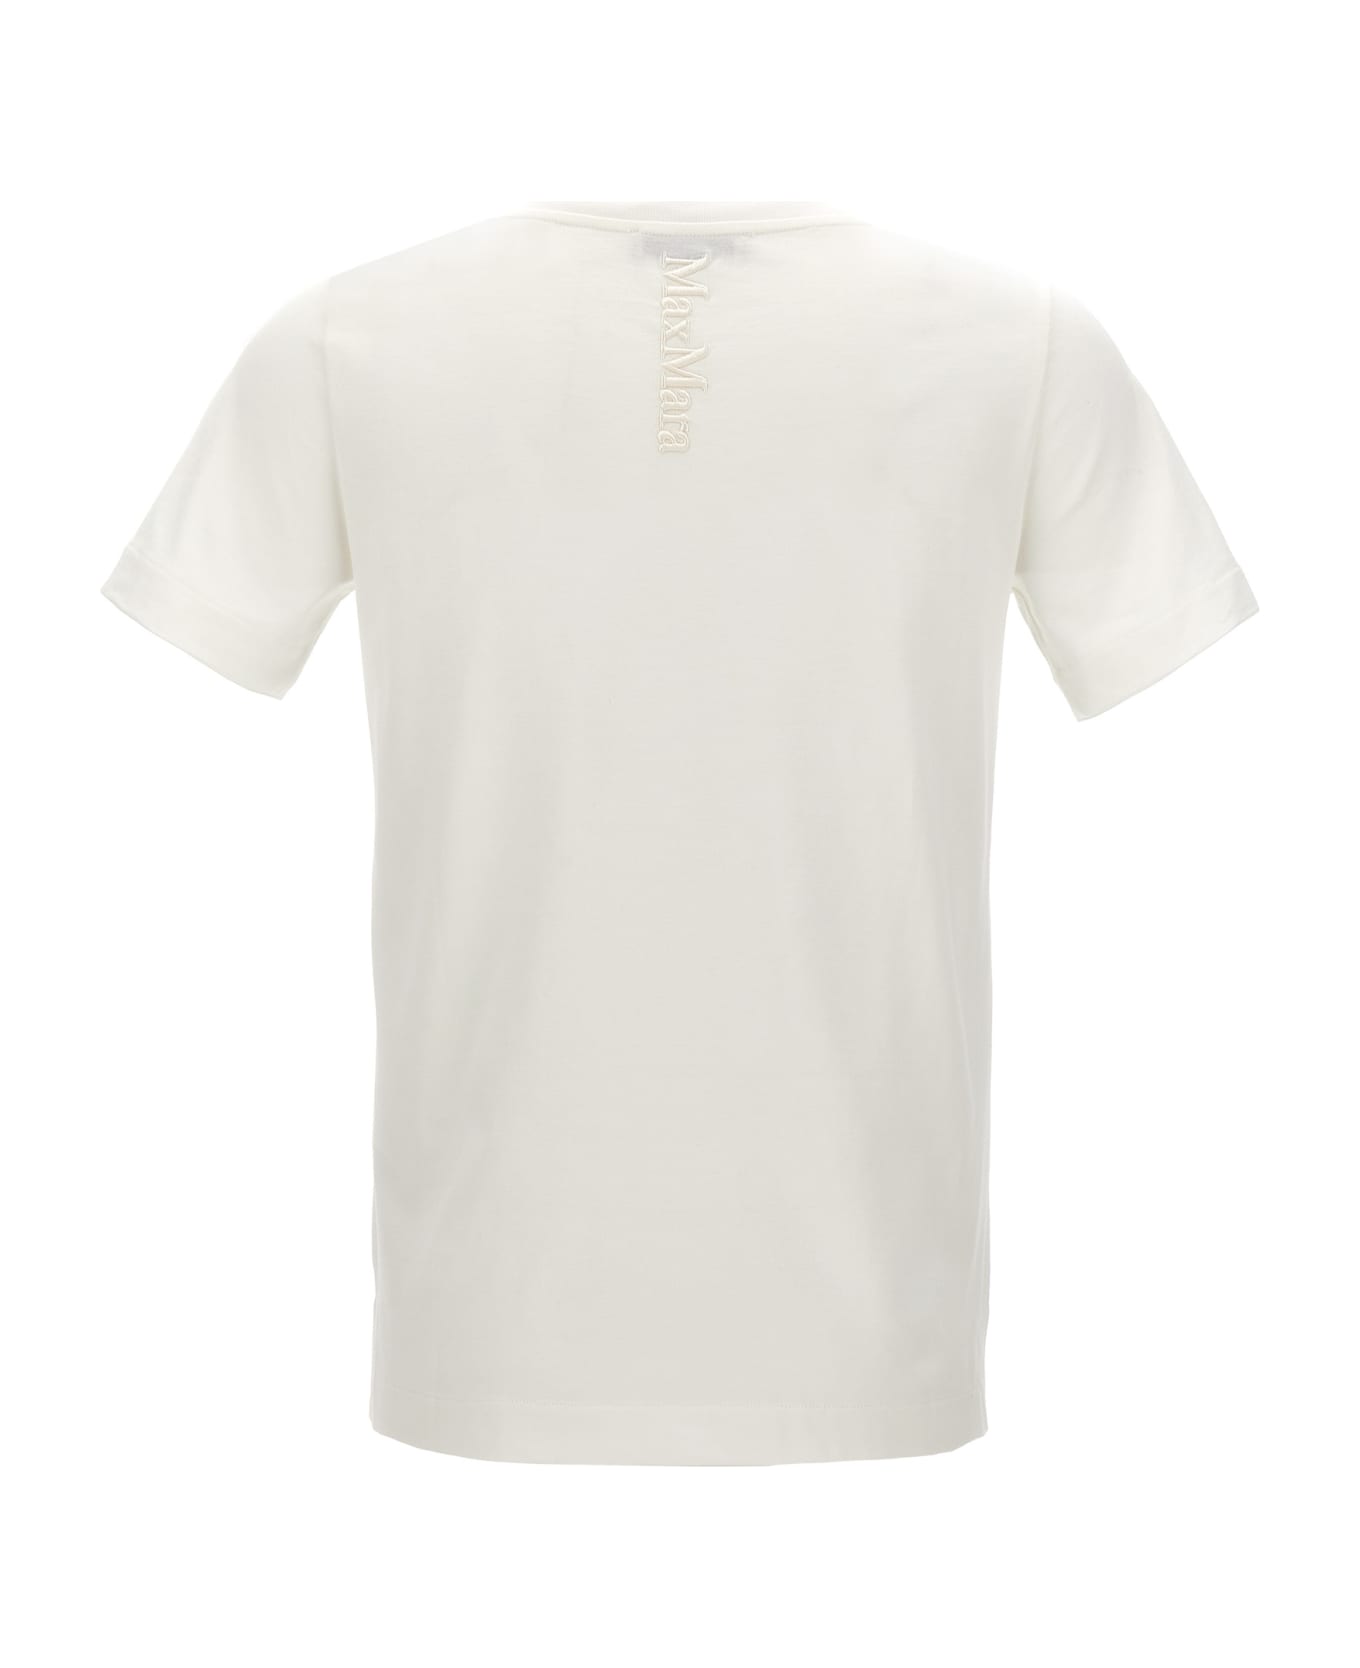 'S Max Mara 'quito' T-shirt - WHITE Tシャツ